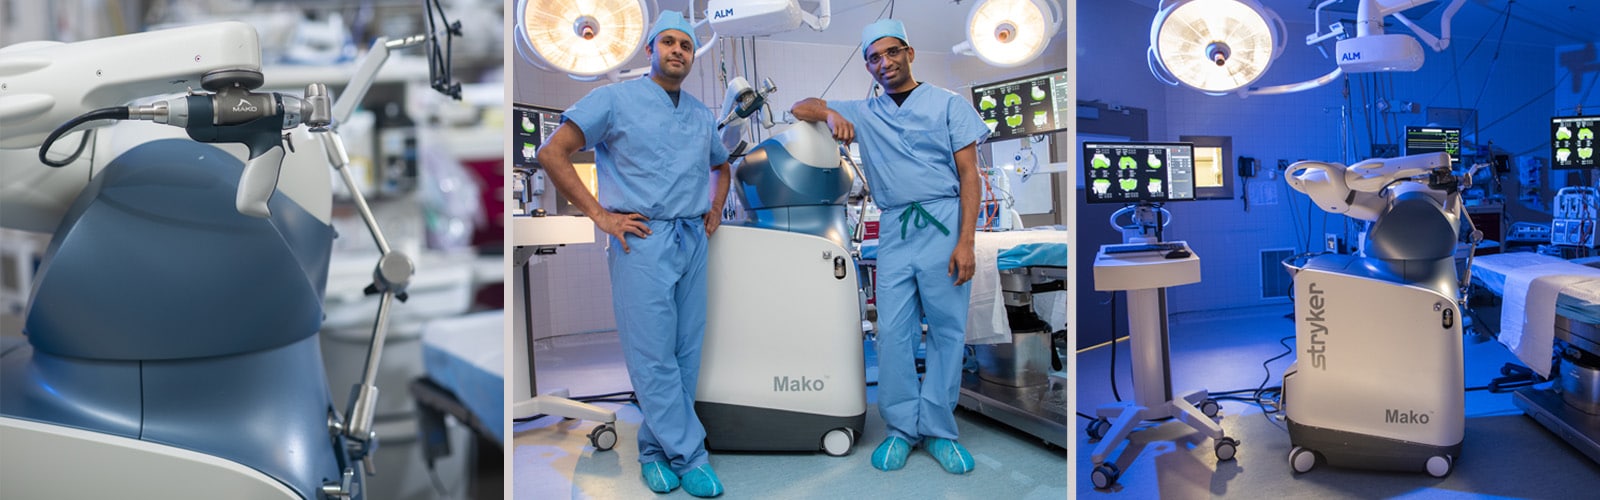 desconcertado pájaro Desnudo Mako Robotic-Arm Assisted Surgery – Med Center Health